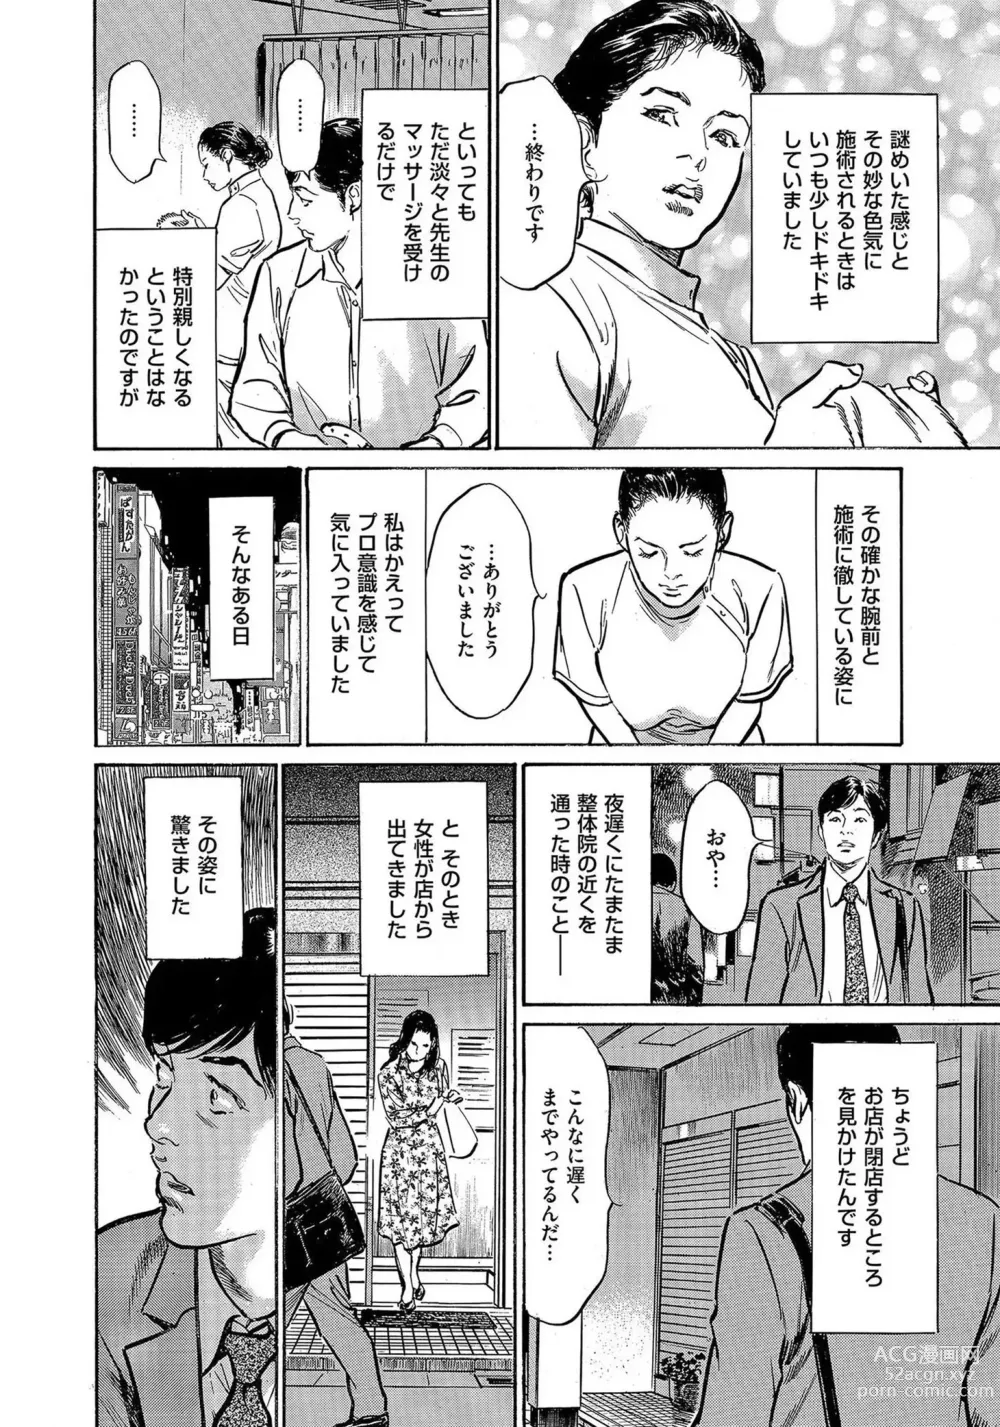 Page 5 of manga Saikou ni Toroketa Honki de Honto no Hanashi 16 episodes